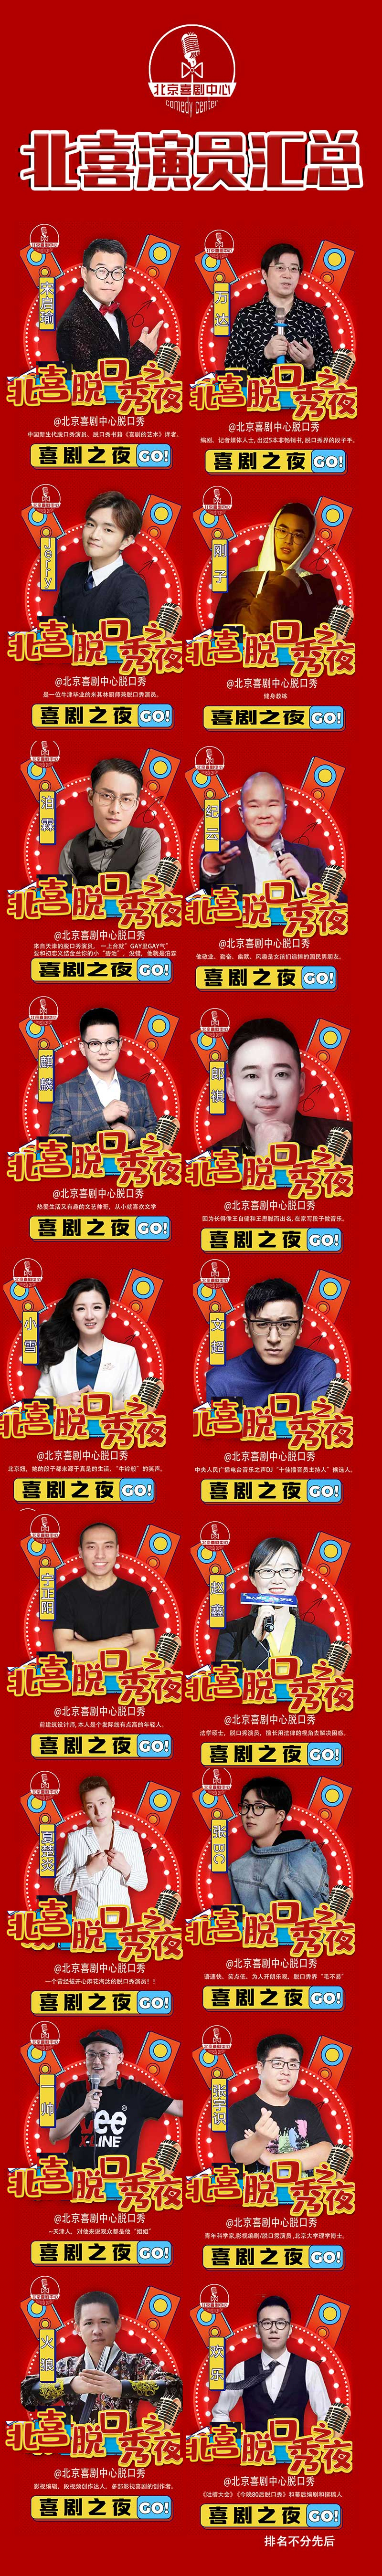 2021【脱口秀专场】超级爆笑盛典X北喜众星云集:喜剧中心--狂欢之夜-北京站